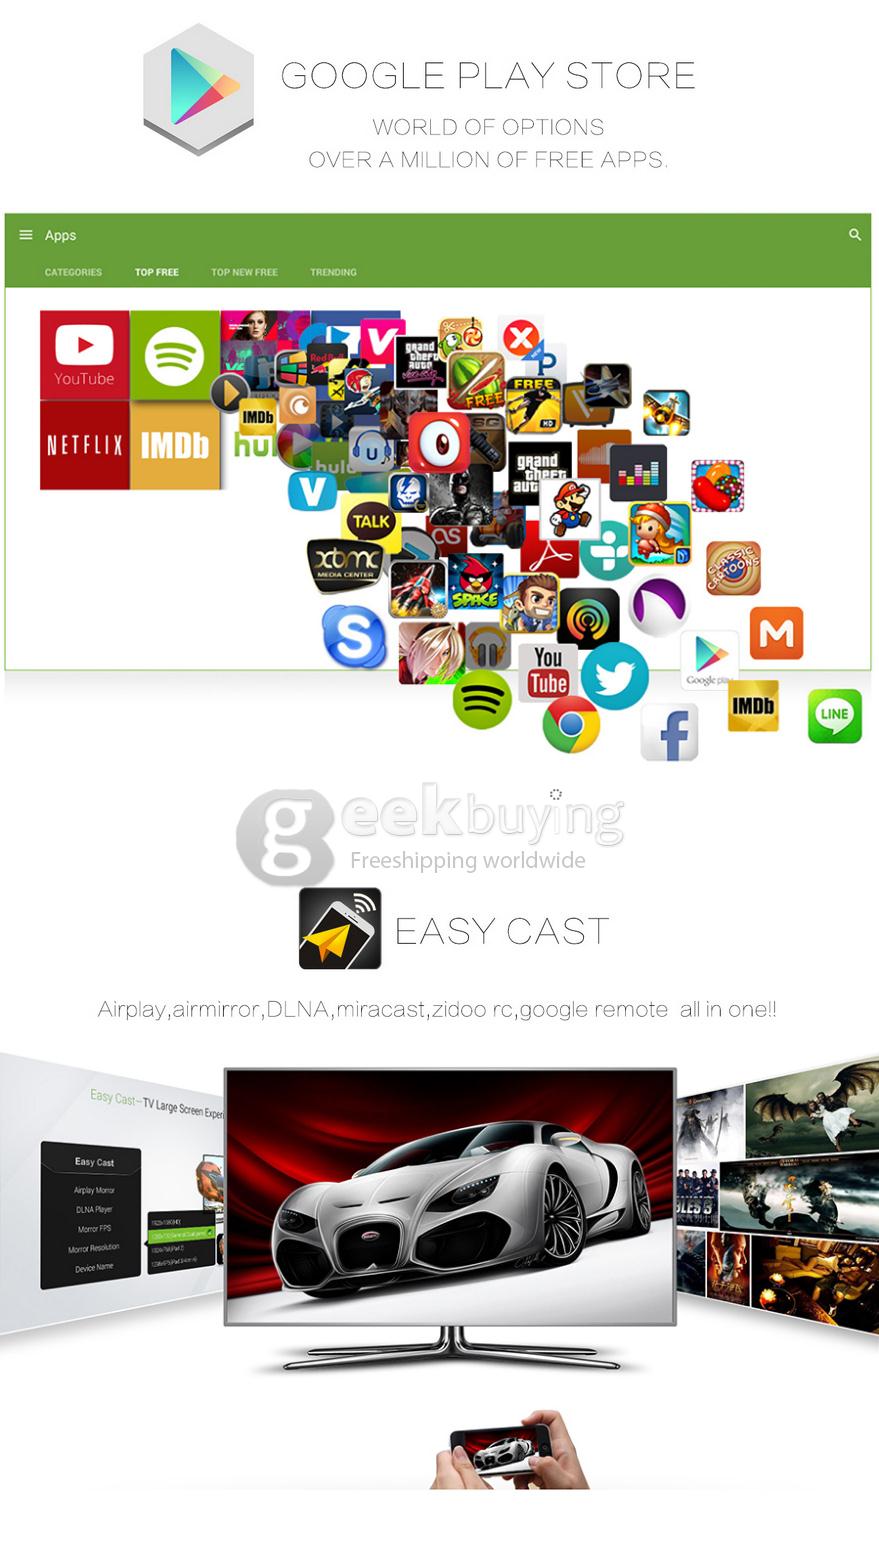 ZIDOO X1 4K TV Box Android 4.4 H.265 3D 1G/8G 802.11 b/g/n LAN HDMI KODI - Silver